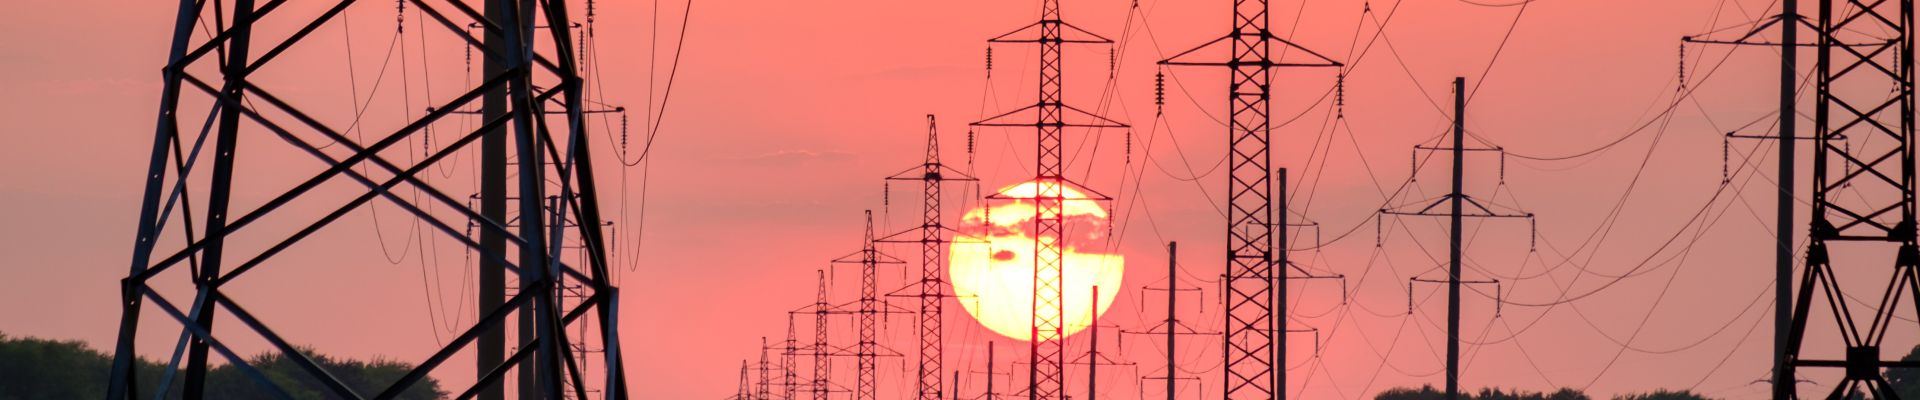 Pylônes électriques devant le coucher du soleil